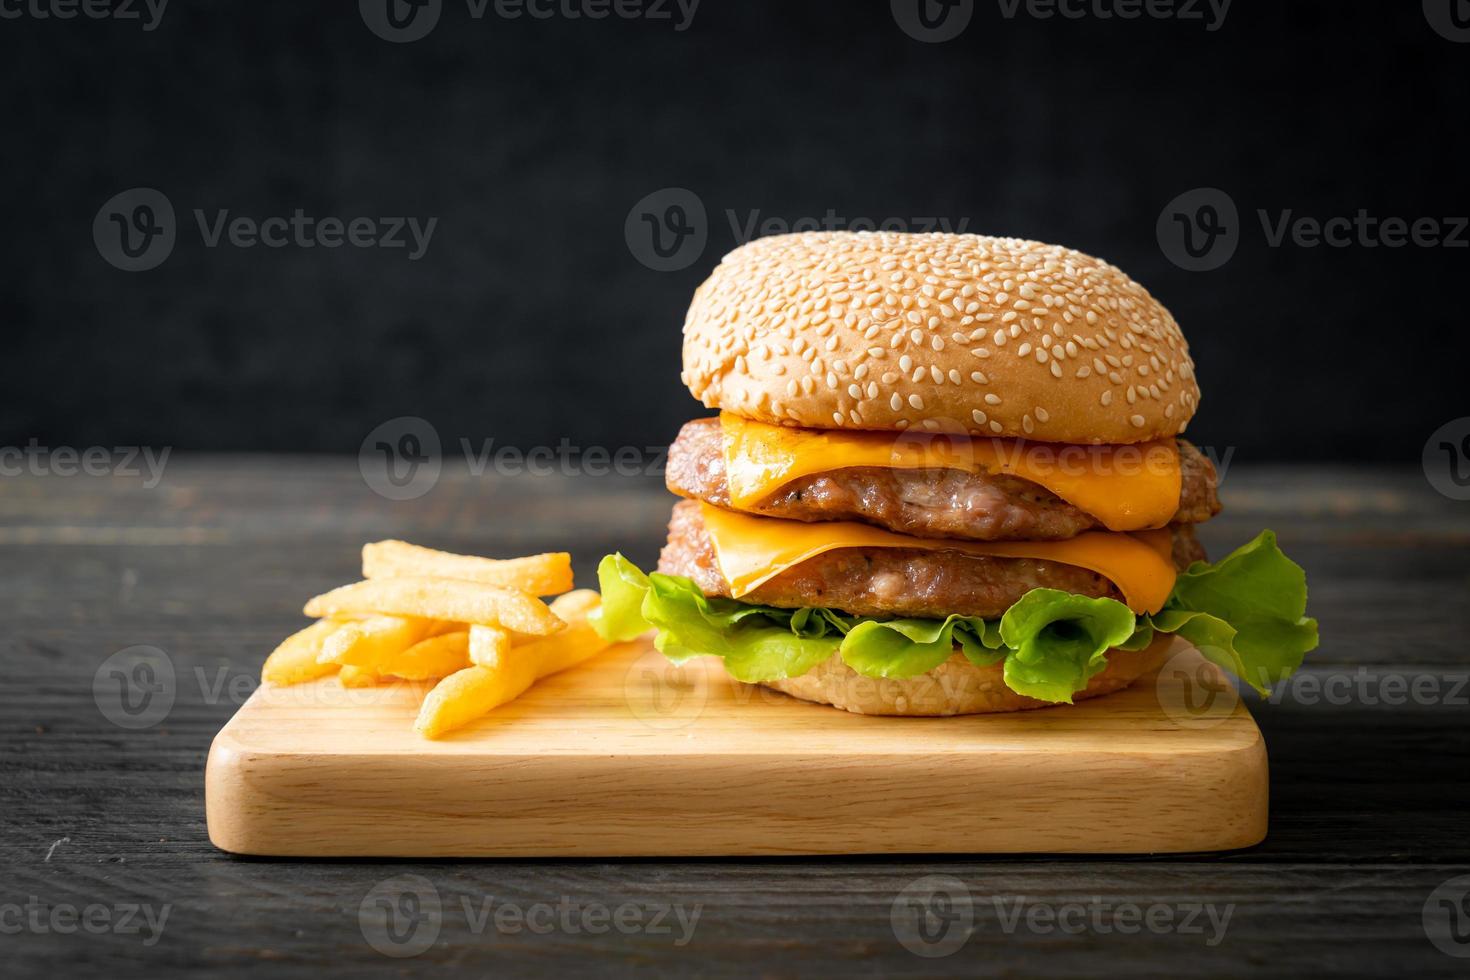 Schweinefleisch-Hamburger oder Schweinefleisch-Burger mit Käse und Pommes frites foto